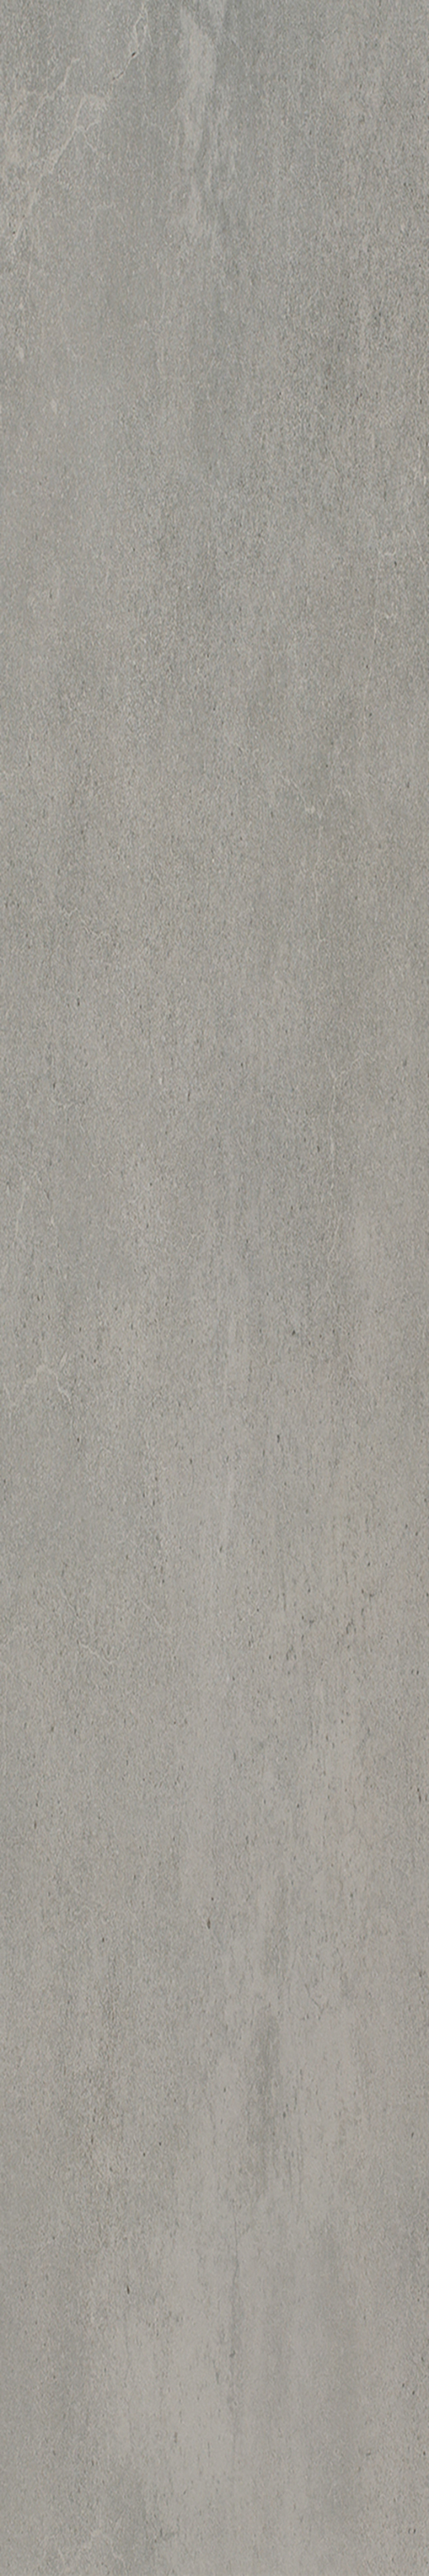 Yuma Cloud Matte 4"X24 | Color Body Porcelain | Floor/Wall Tile